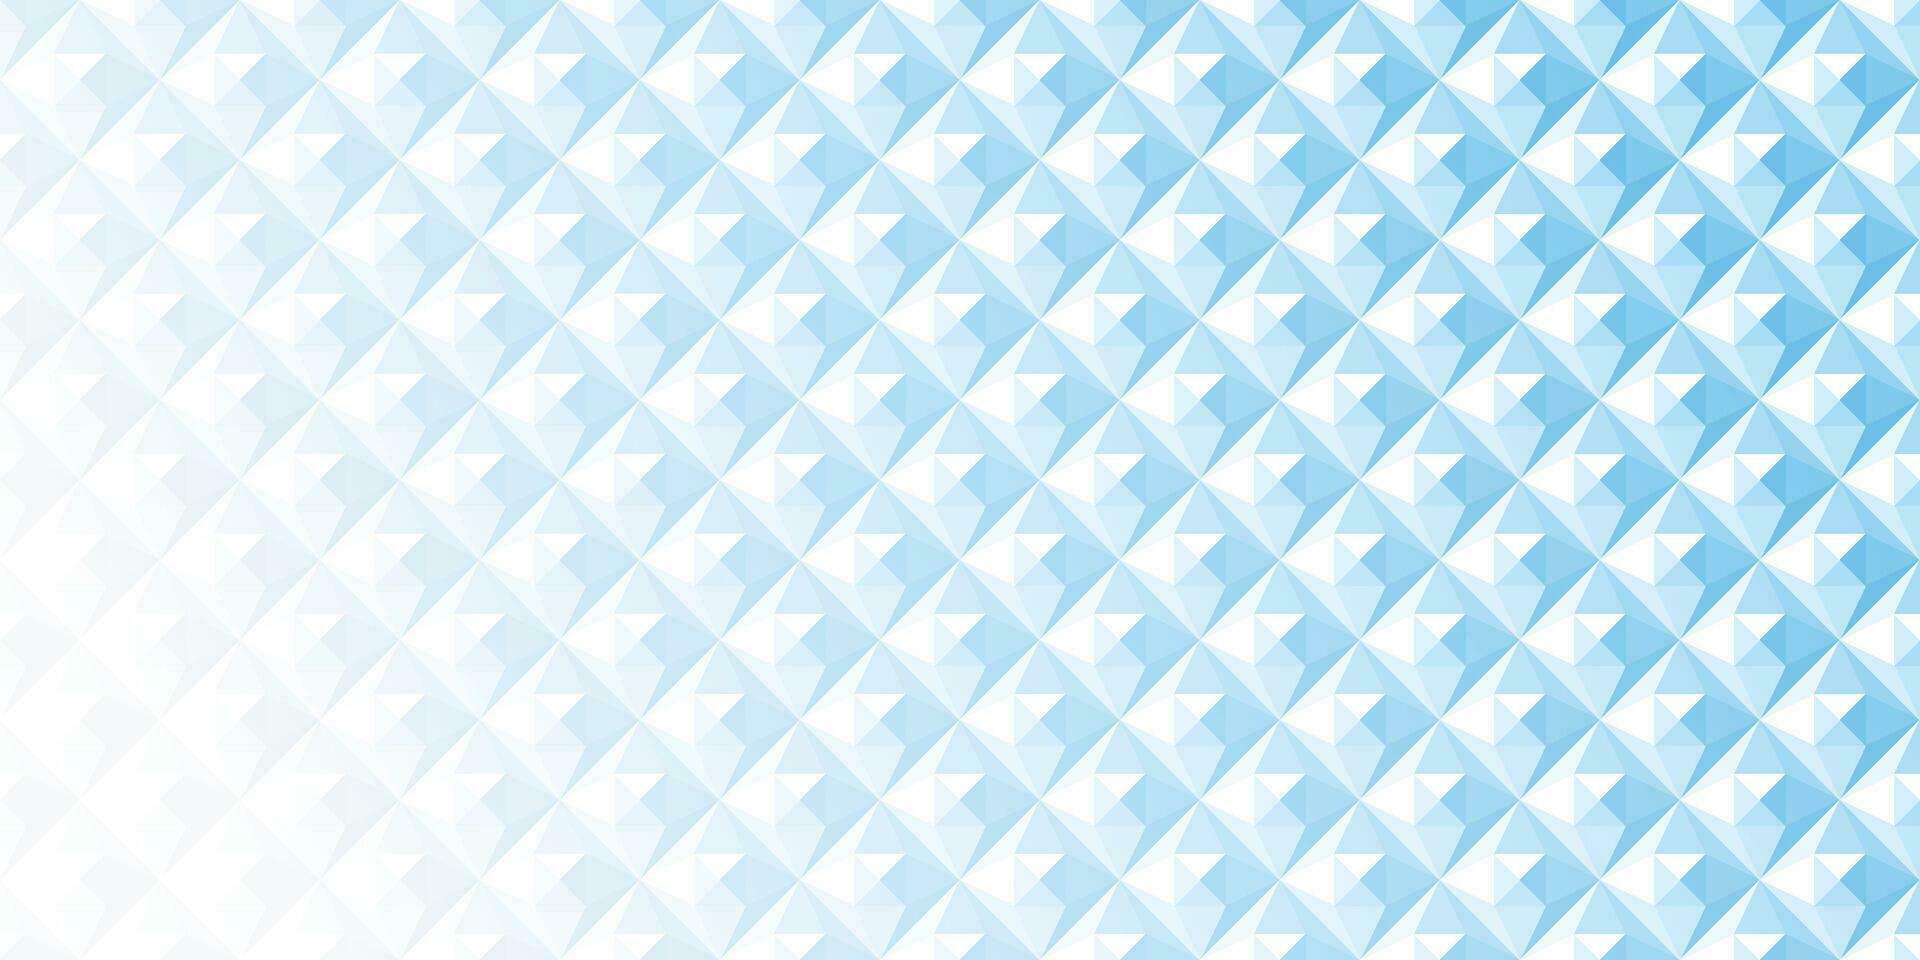 abstrakt Weiß und Blau geometrisch Hintergrund Textur vektor